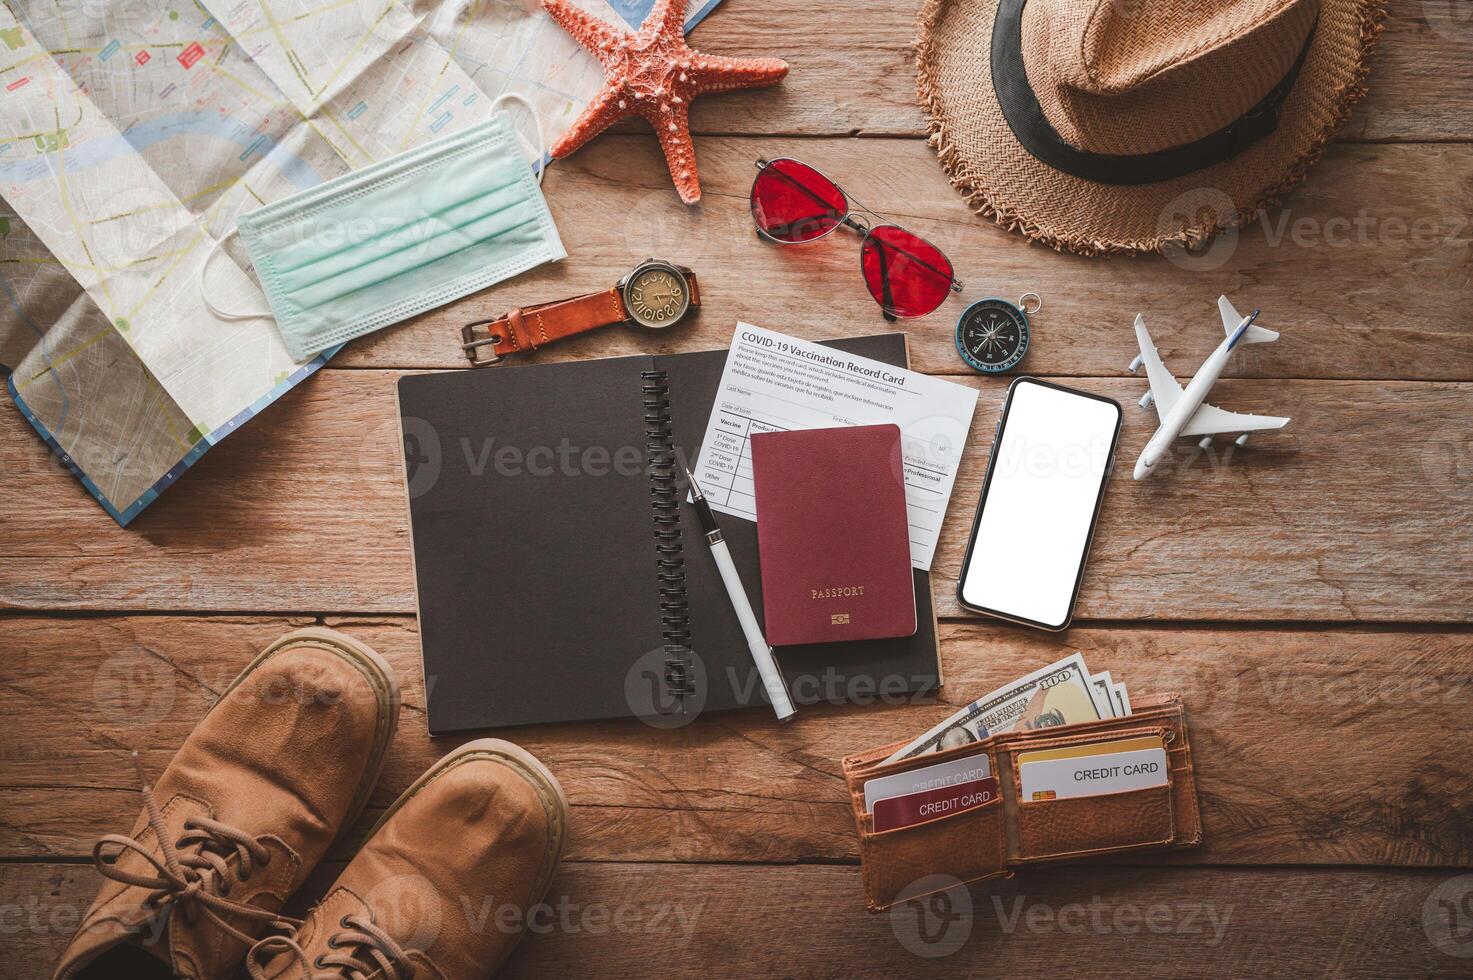 beschermen covid-19 terwijl reizend. reizen accessoires kostuums. paspoorten, bagage, de kosten van reizen kaarten bereid voor de reis .concept nieuw normaal levensstijl foto